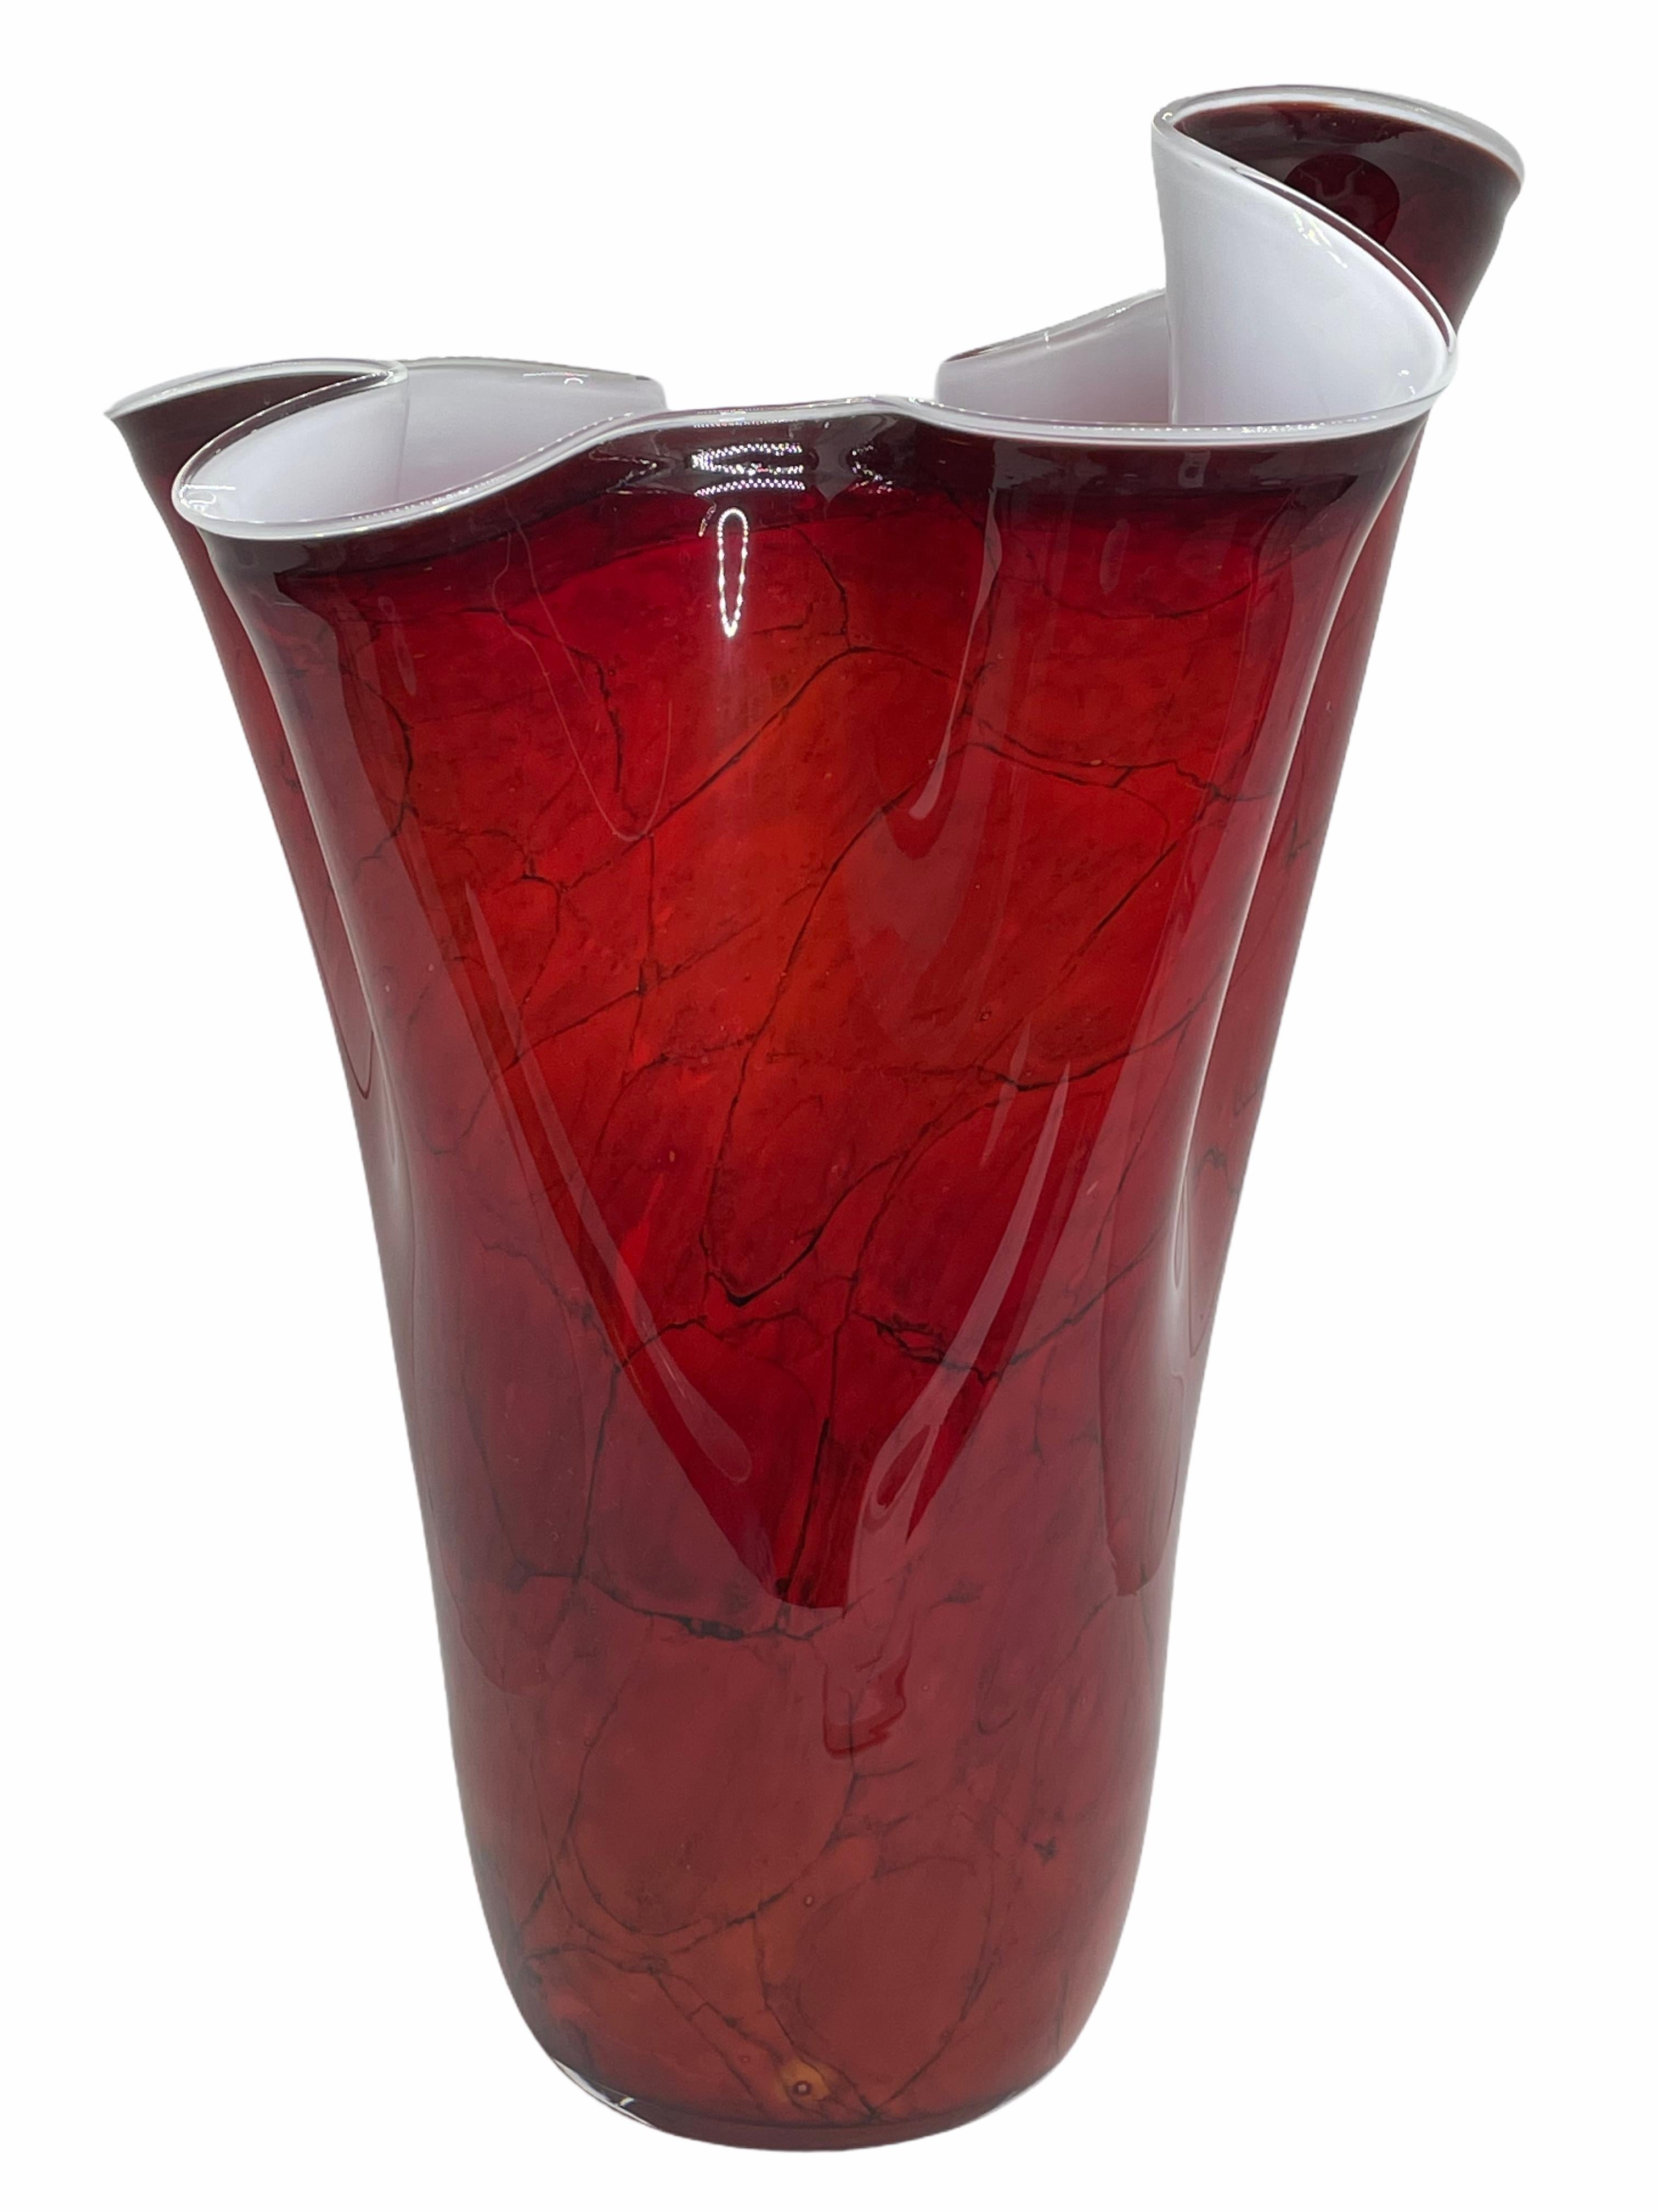 Beautiful Murano hand blown red and black Italian art glass handkerchief vase. Measures: 9 3/4